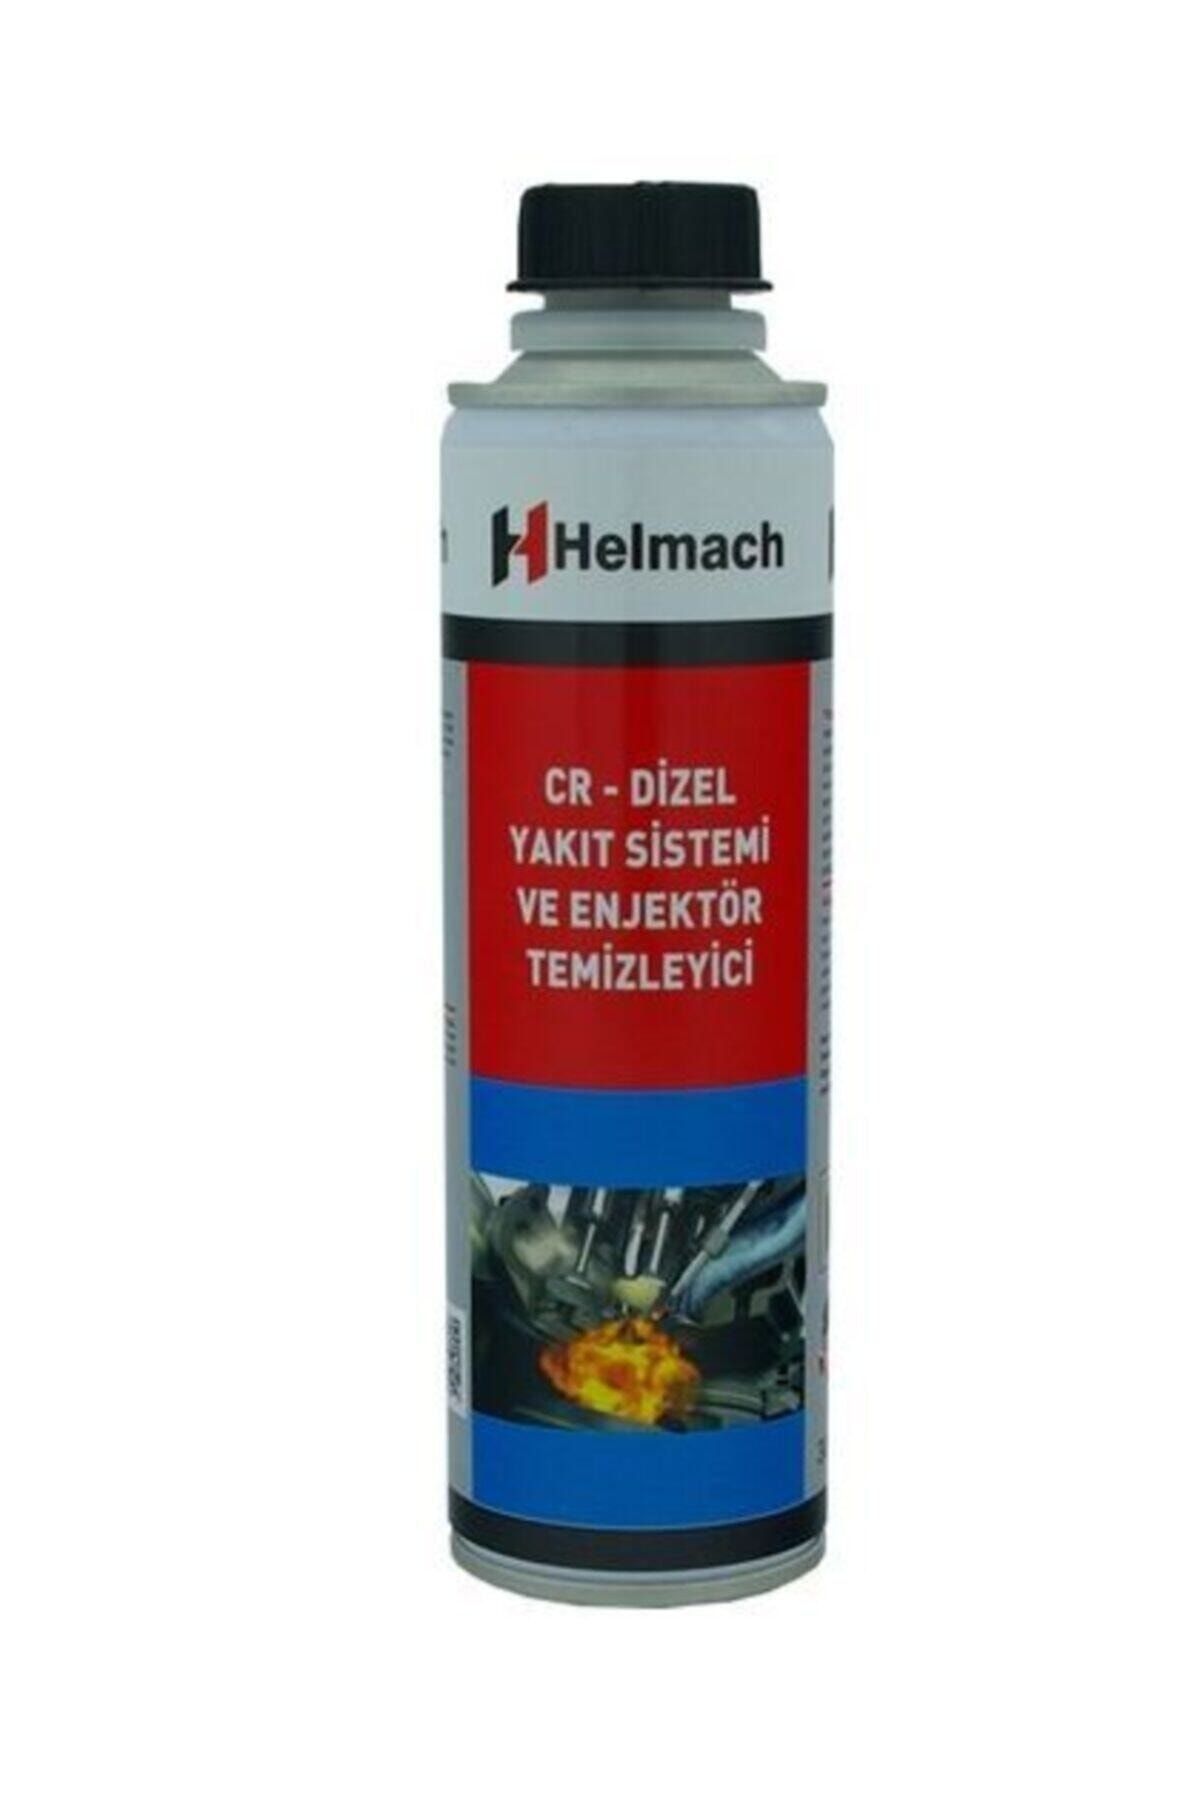 BOSS Helmach Cr-dizel Yakıt Sistemi Ve Enjektör Temizleyici 300 ml